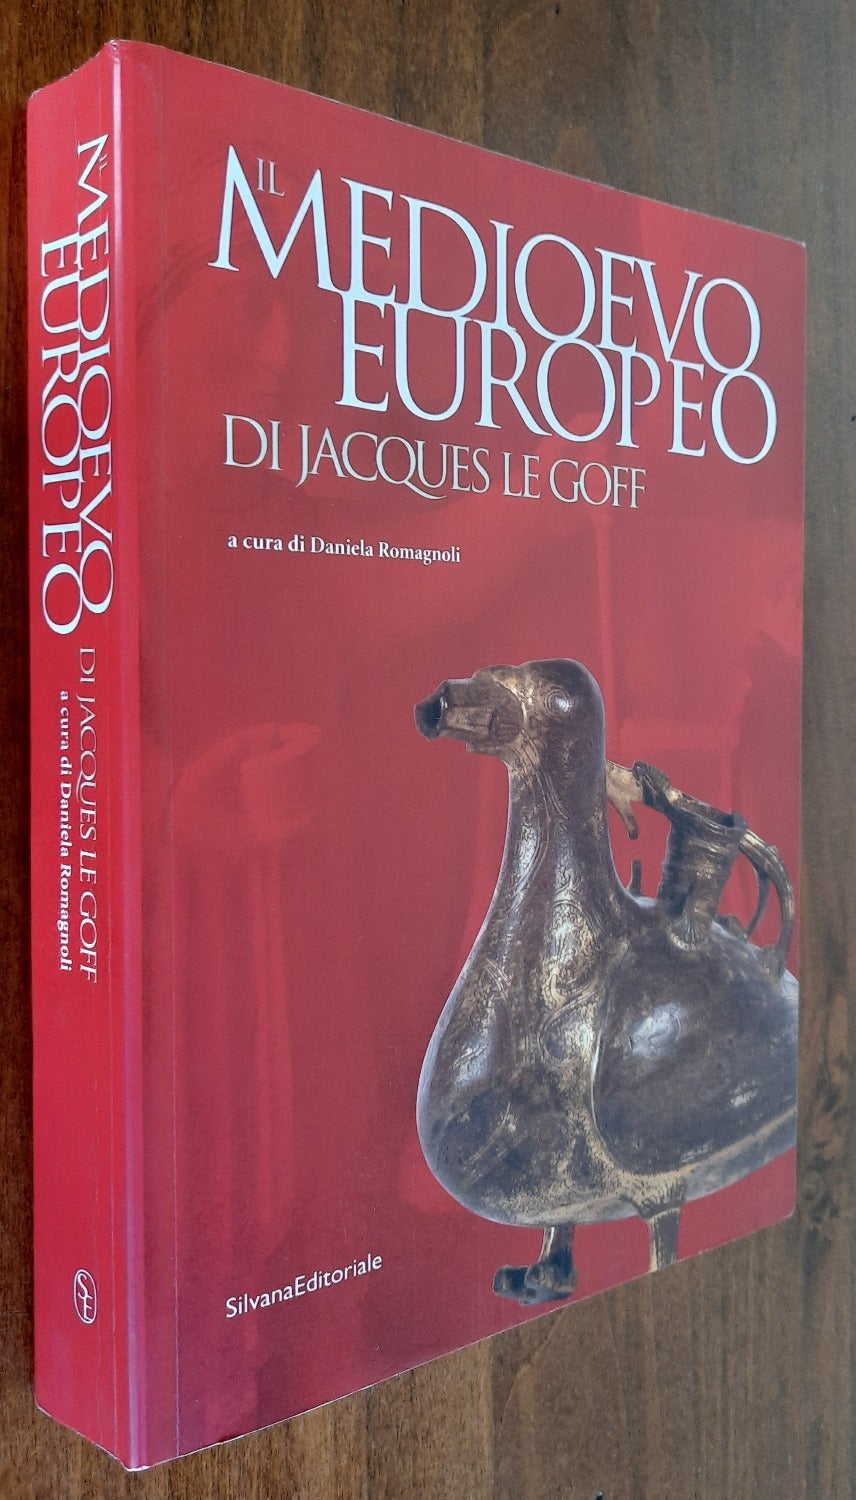 Il Medioevo europeo di Jacques Le Goff. Catalogo della mostra (Parma, 28 settembre 2003-06 gennaio 2004)